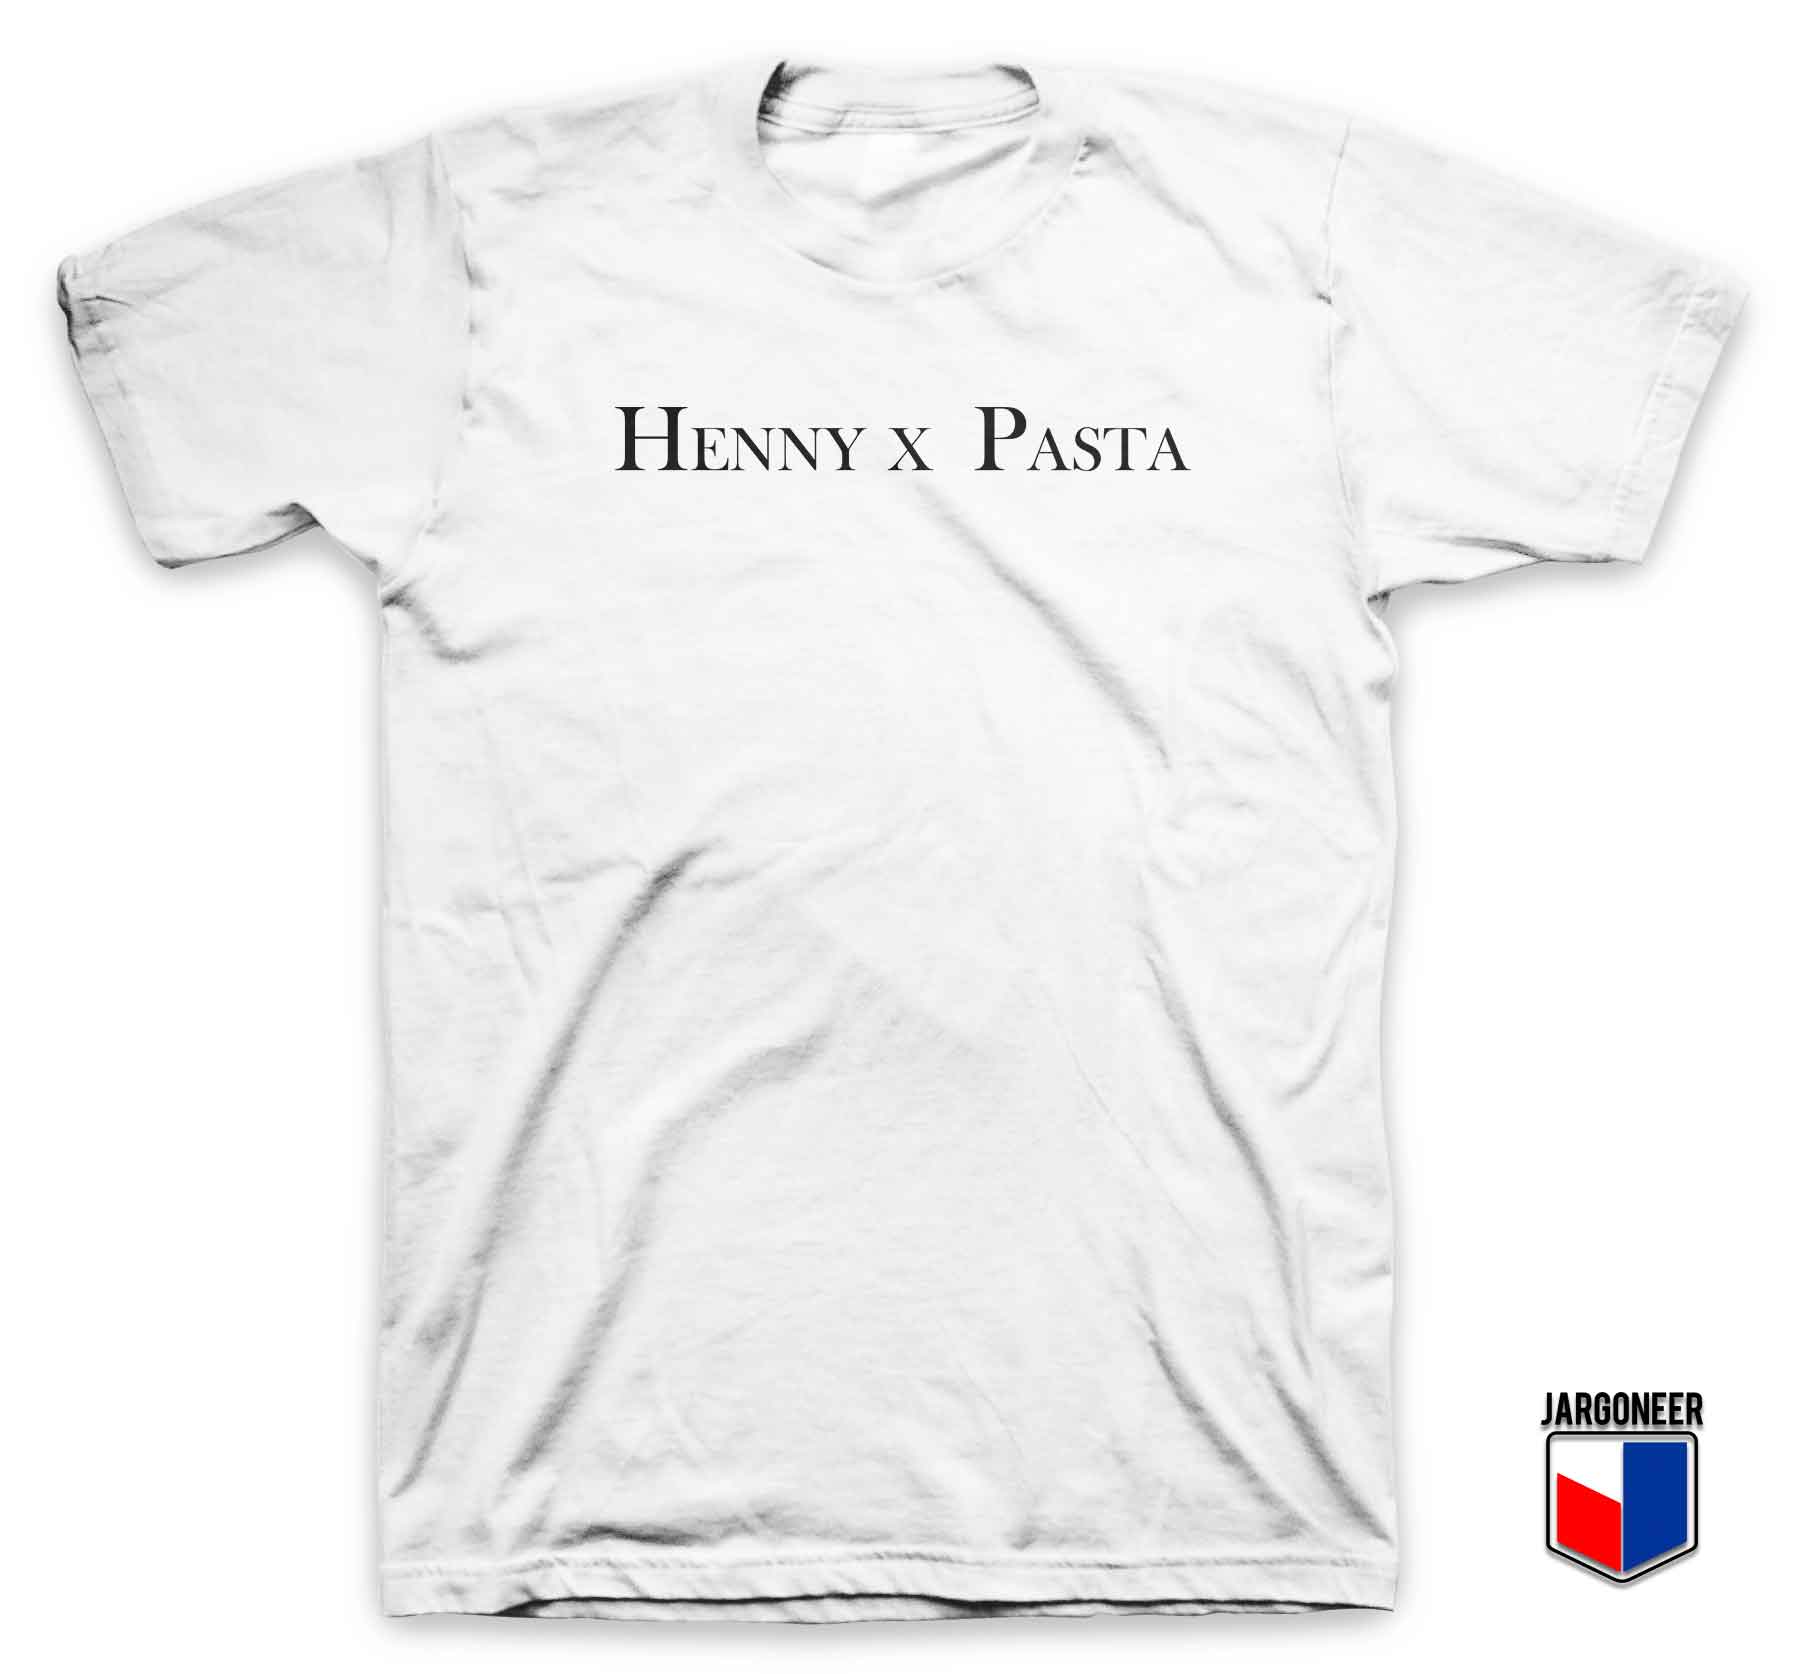 Henny x Pasta - Shop Unique Graphic Cool Shirt Designs